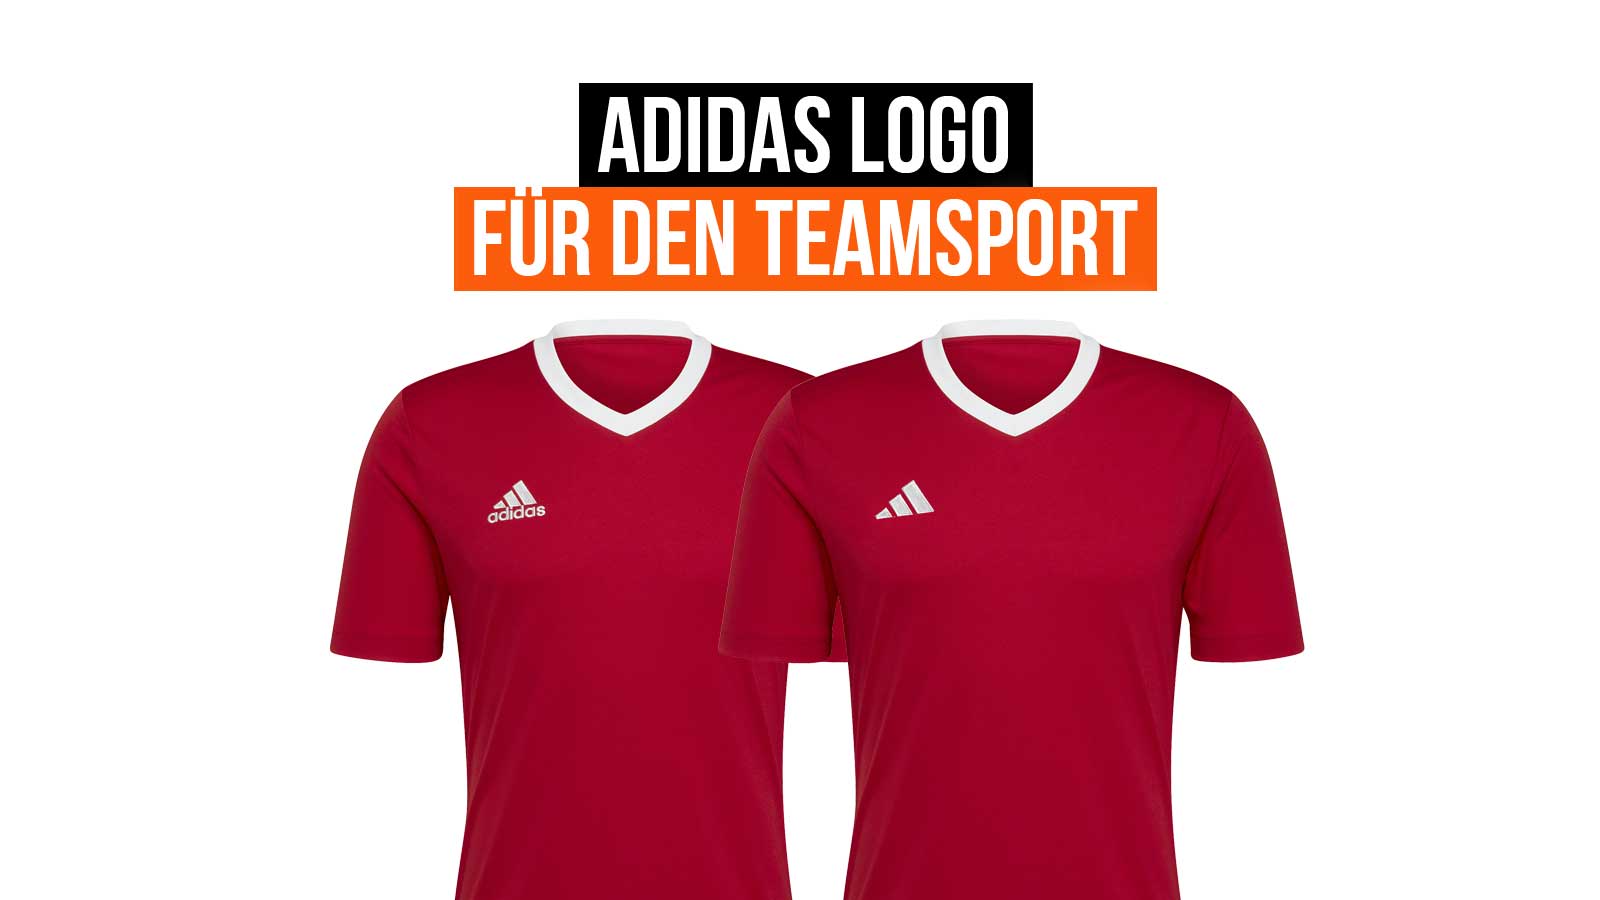 Das neue adidas Logo für alle Teamsport Sportartikel